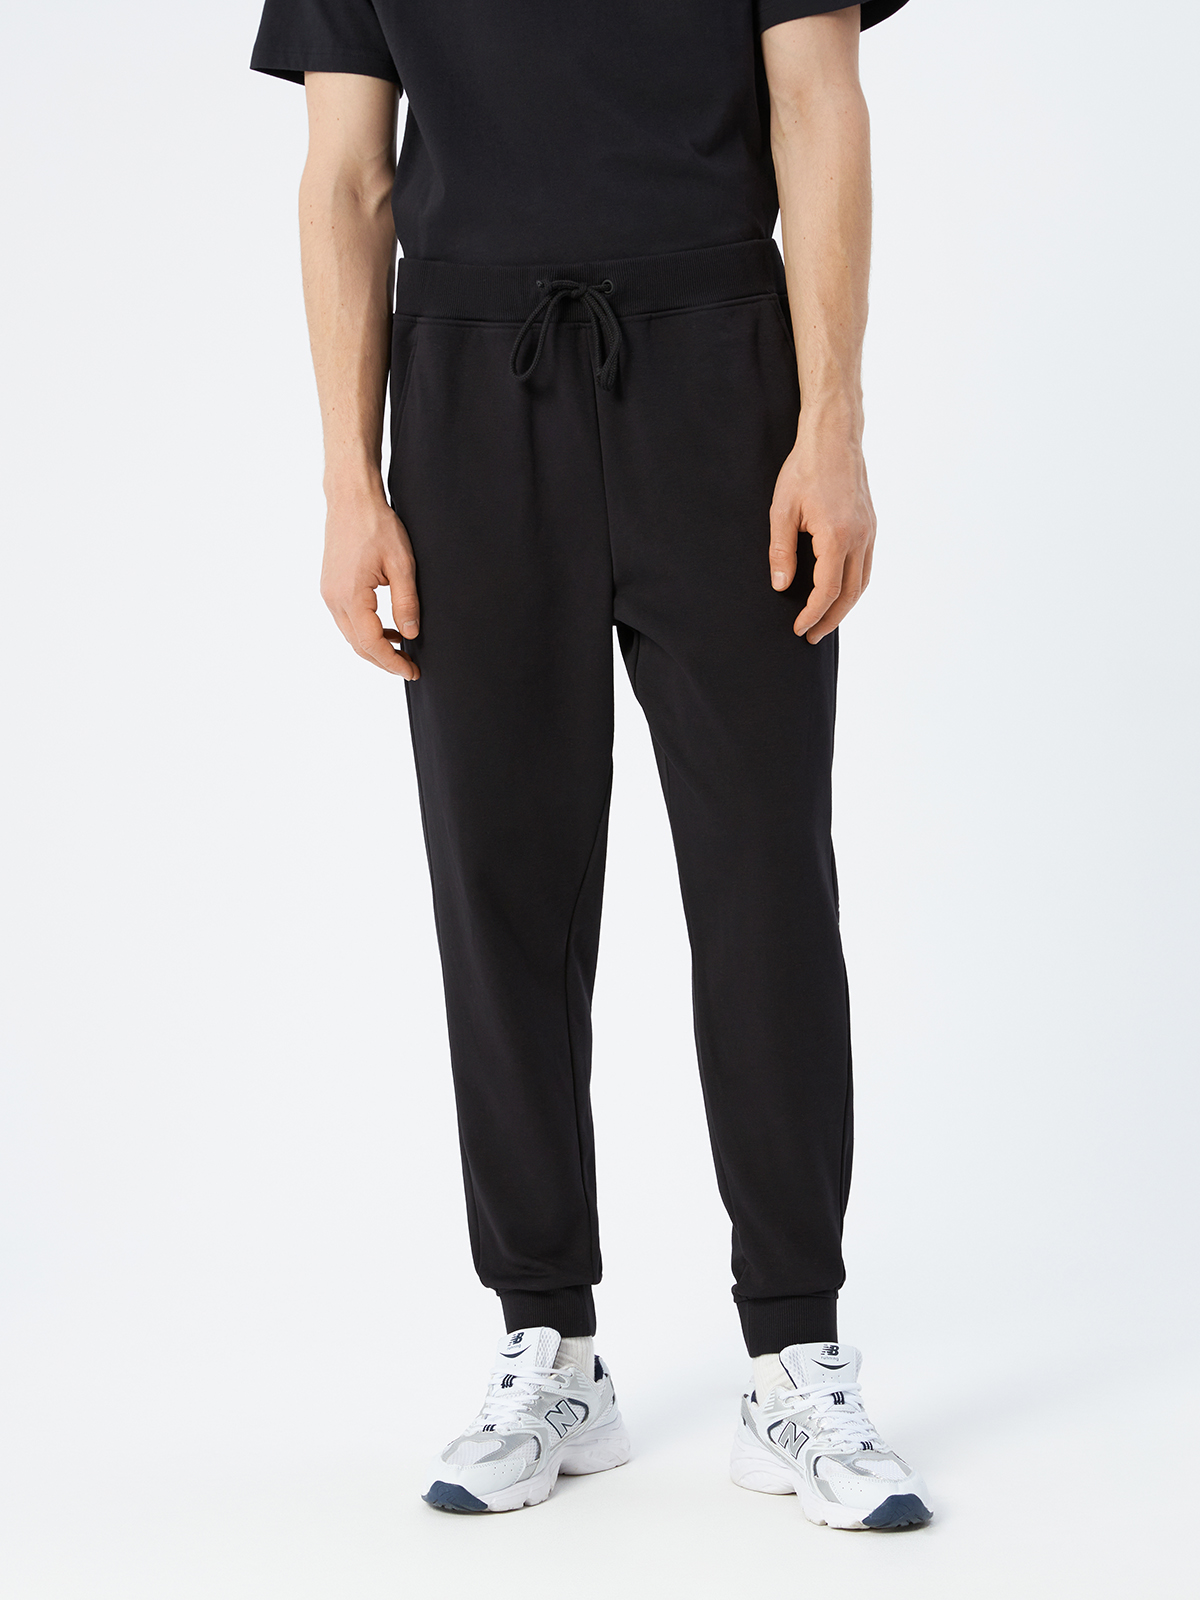 Брюки спортивные мужские Calvin Klein 00GMF2P613BAE чёрные, размер S